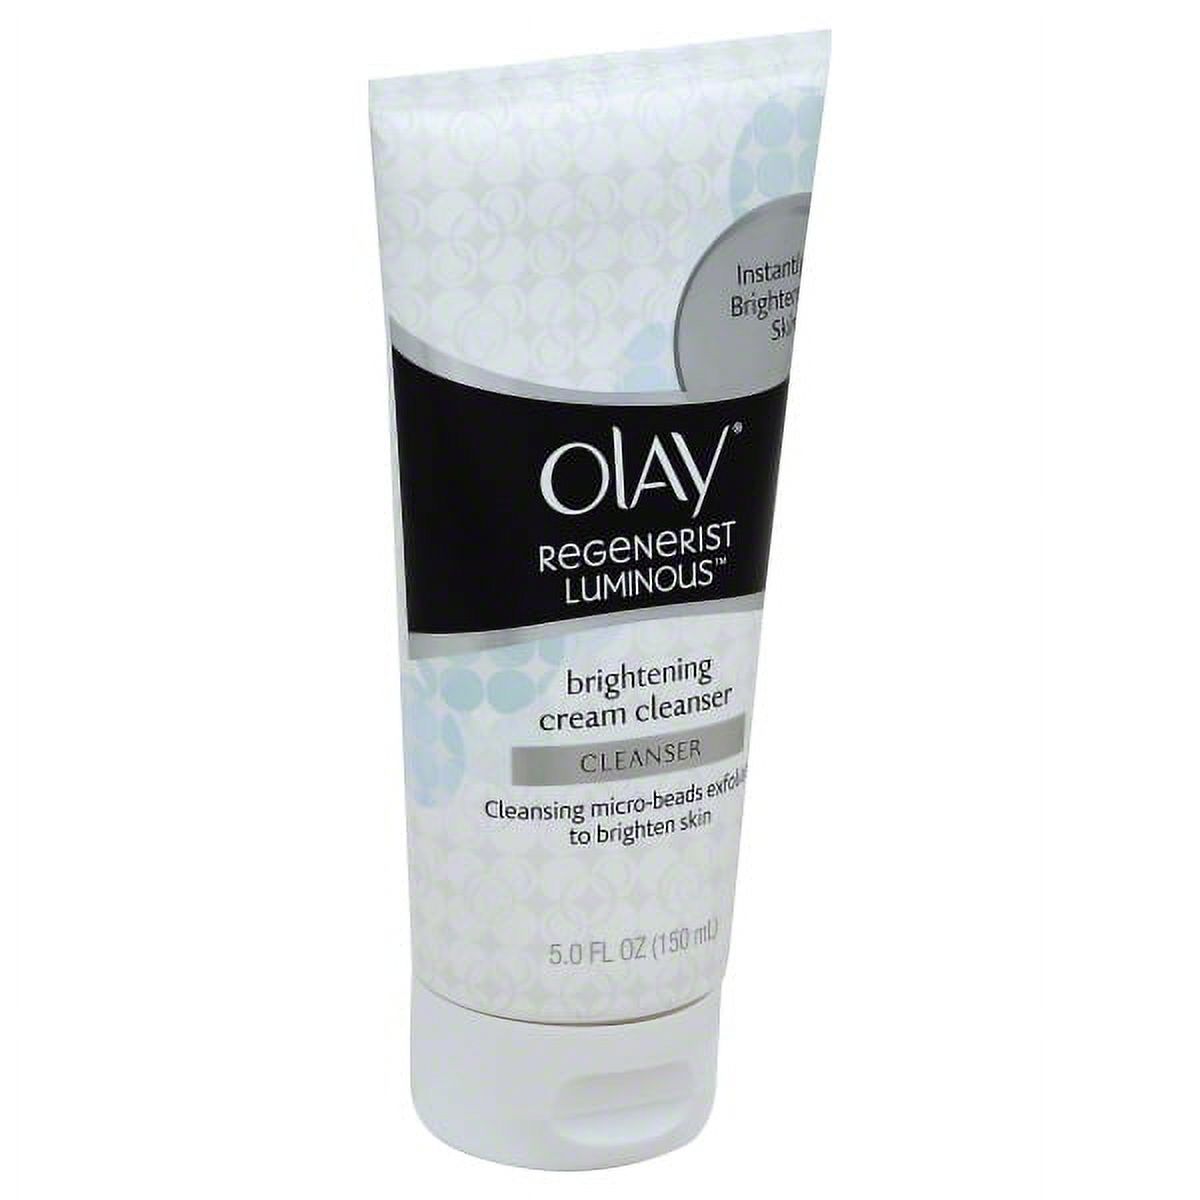 Olay Regenerist Luminous Brightening Cream Cleanser, 5 fl oz - image 1 of 2